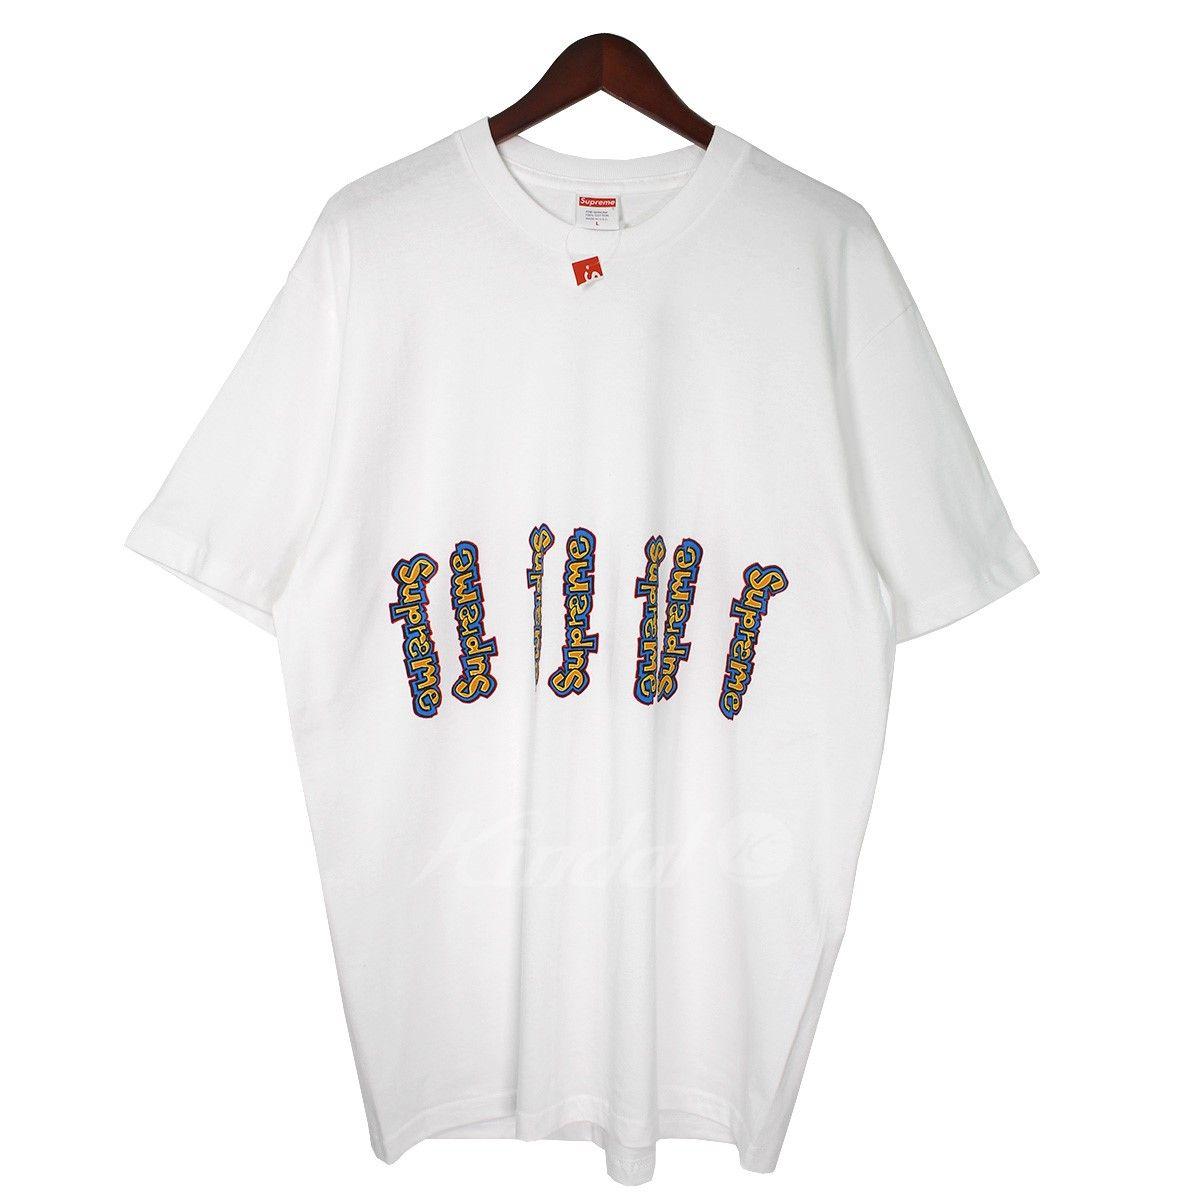 Multi Supreme Logo - Kindal: SUPREME 18SS Gonz Logo Tee Gon's Multi Logo T Shirt White